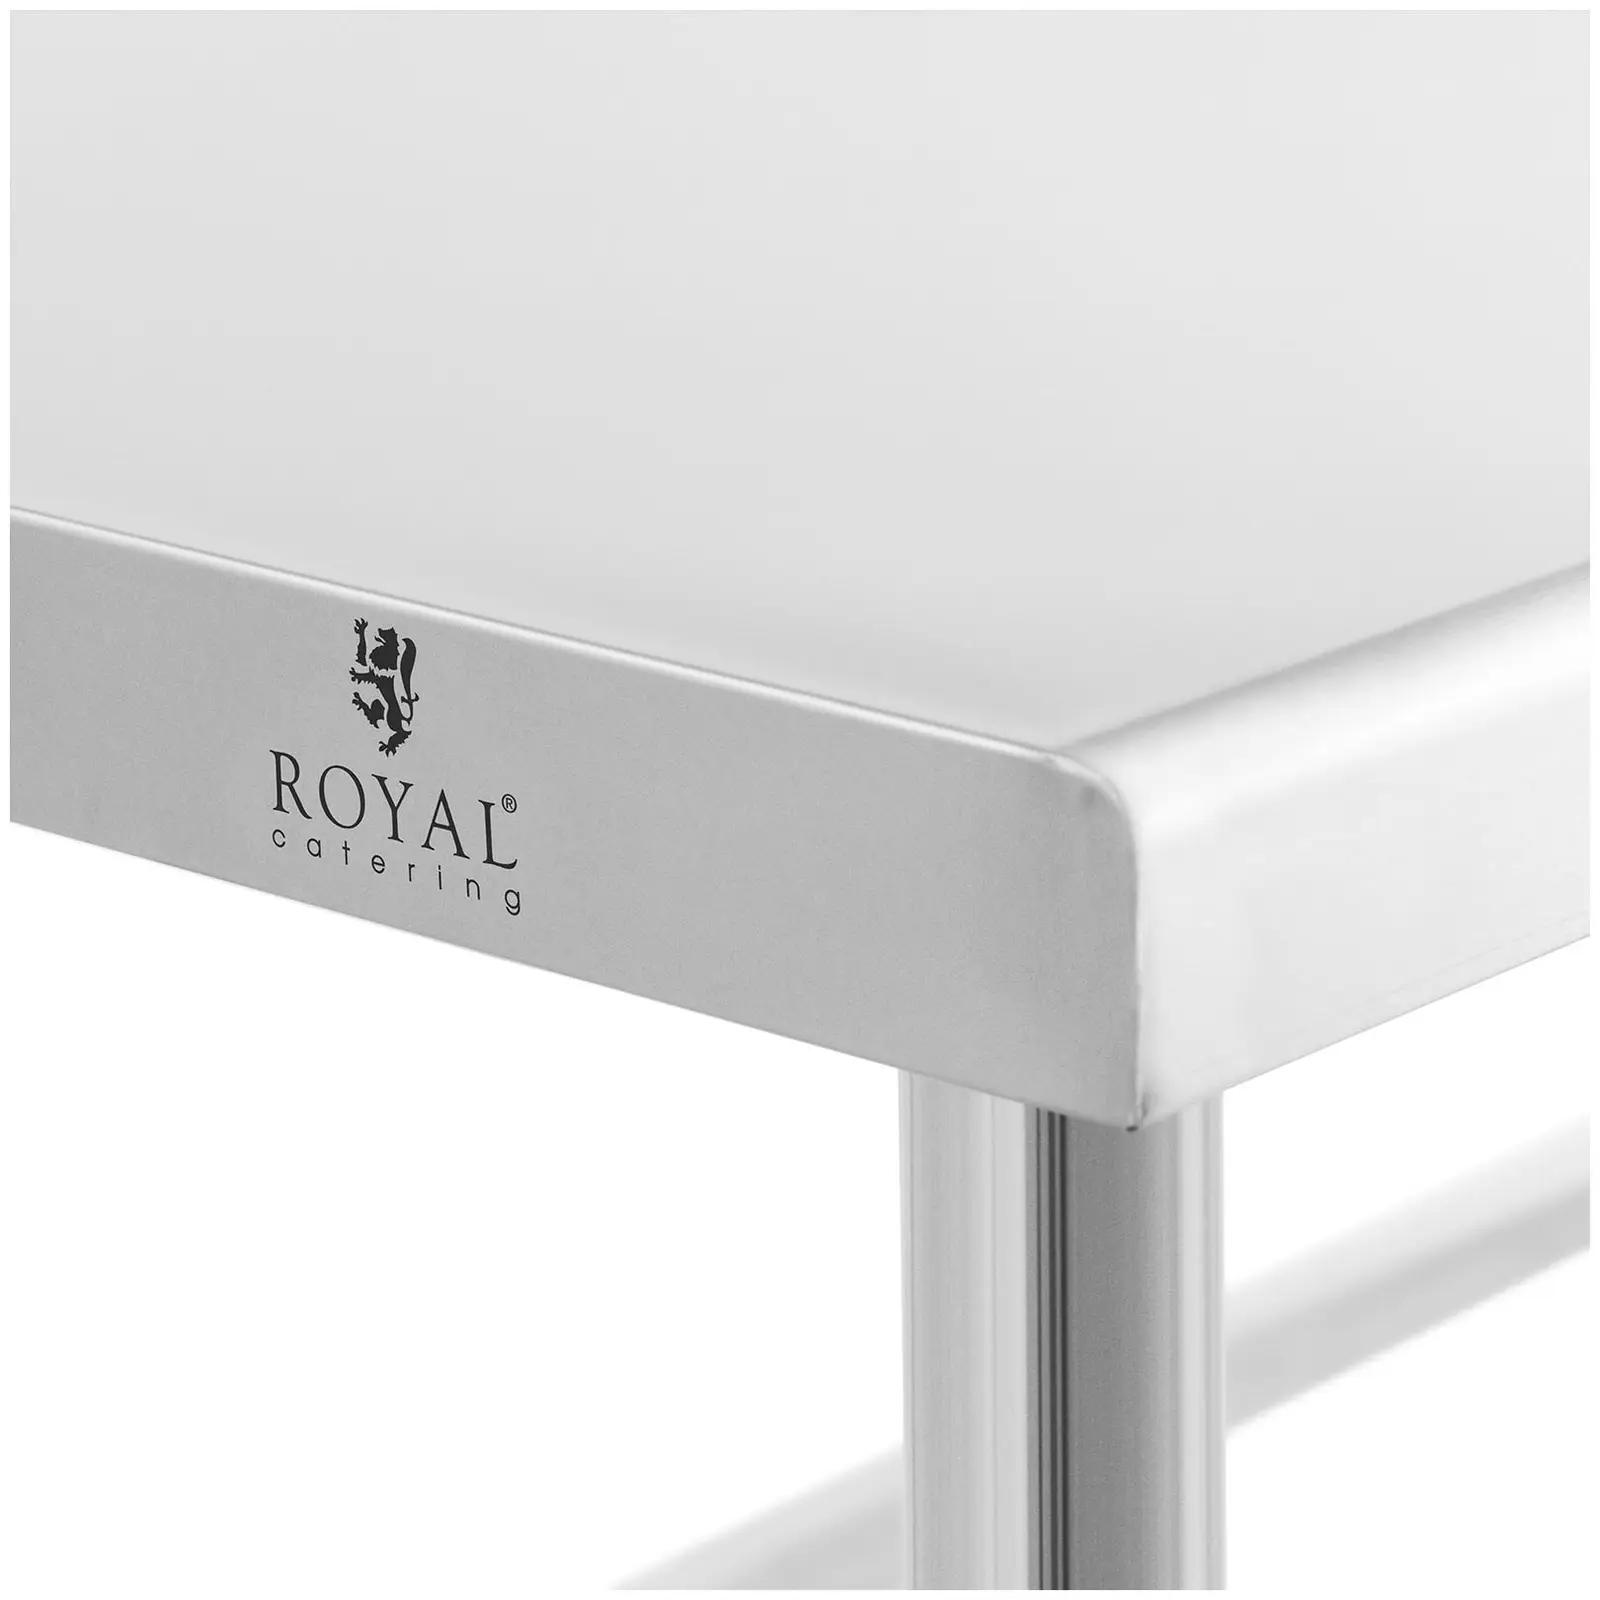 Stół ze stali nierdzewnej - 200 x 60 cm - rant - udźwig 95 kg - Royal Catering